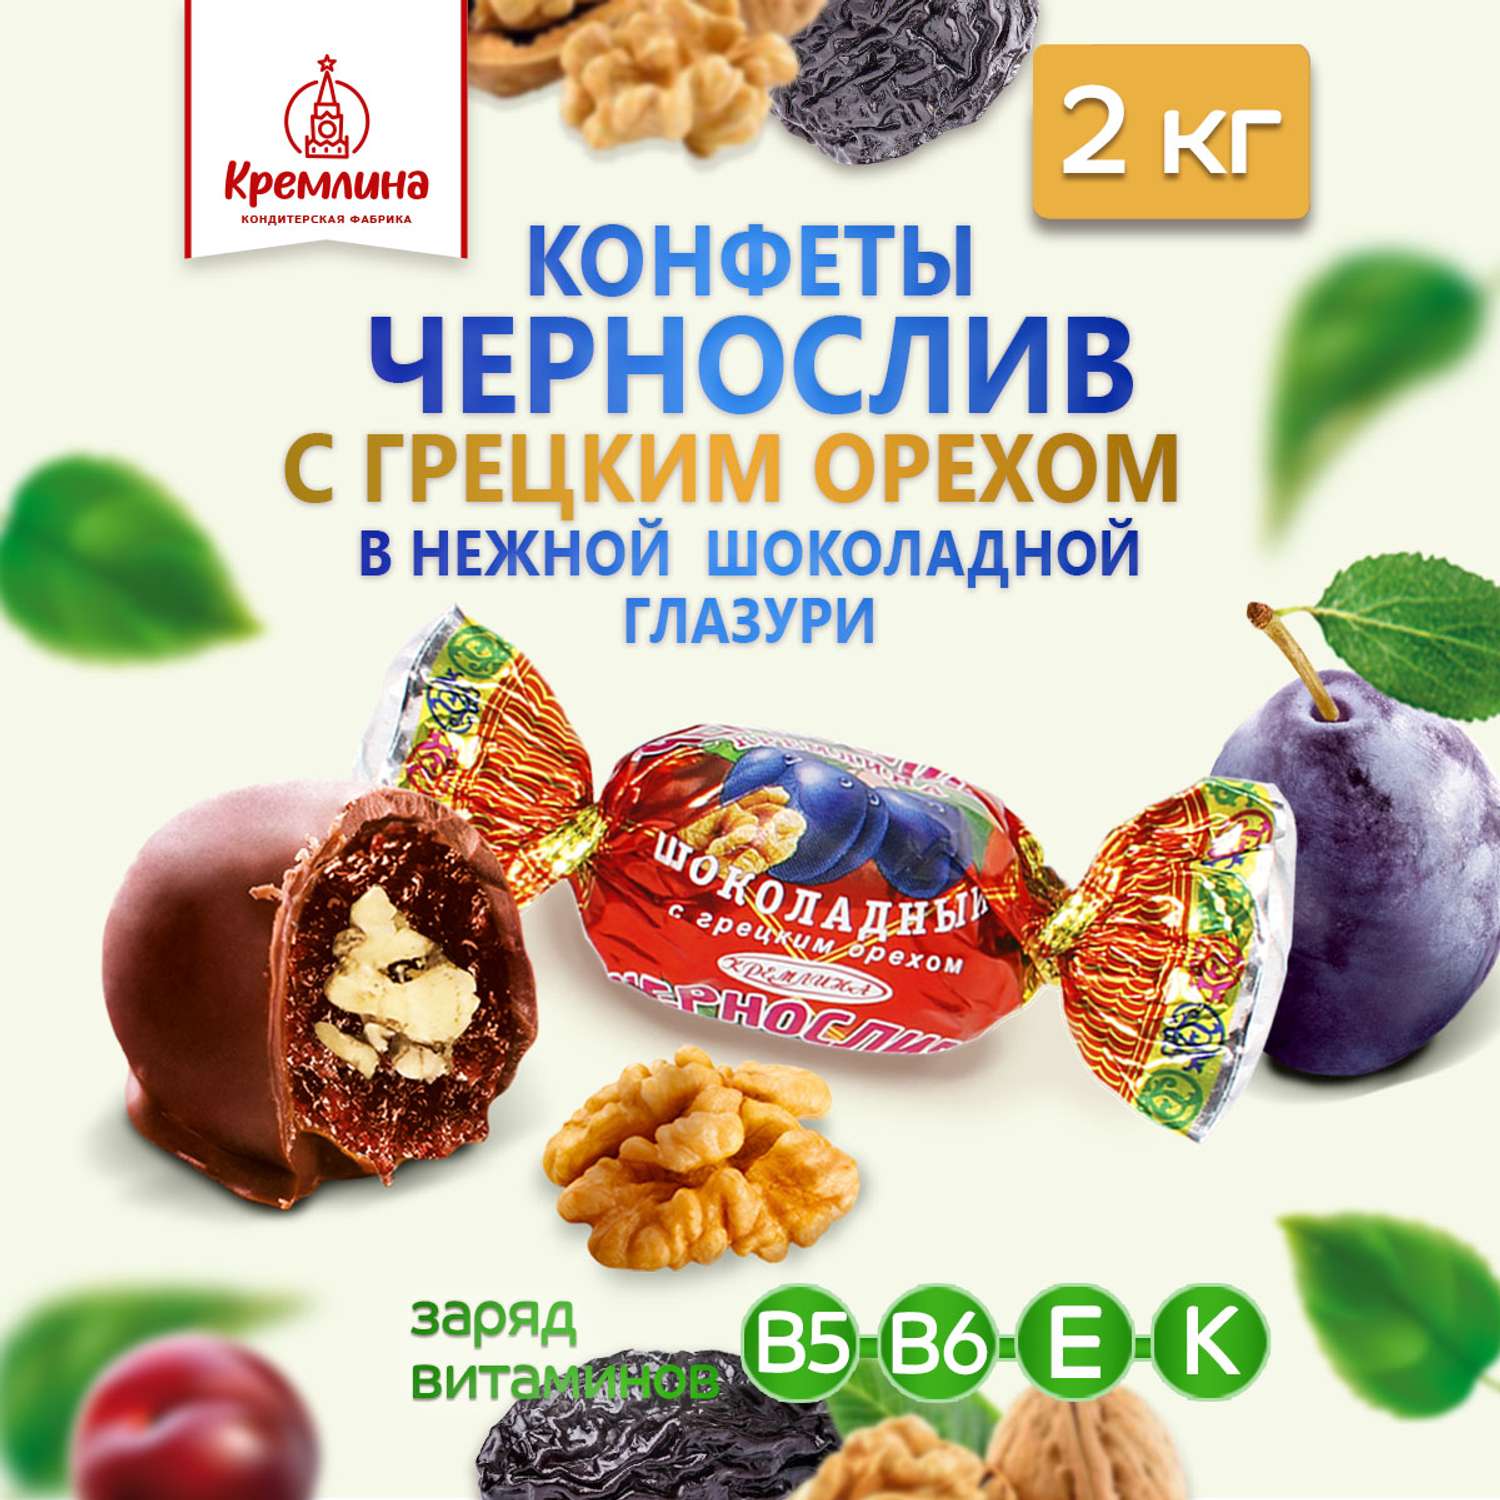 Конфеты чернослив в глазури Кремлина с грецким орехом короб 2 кг - фото 1